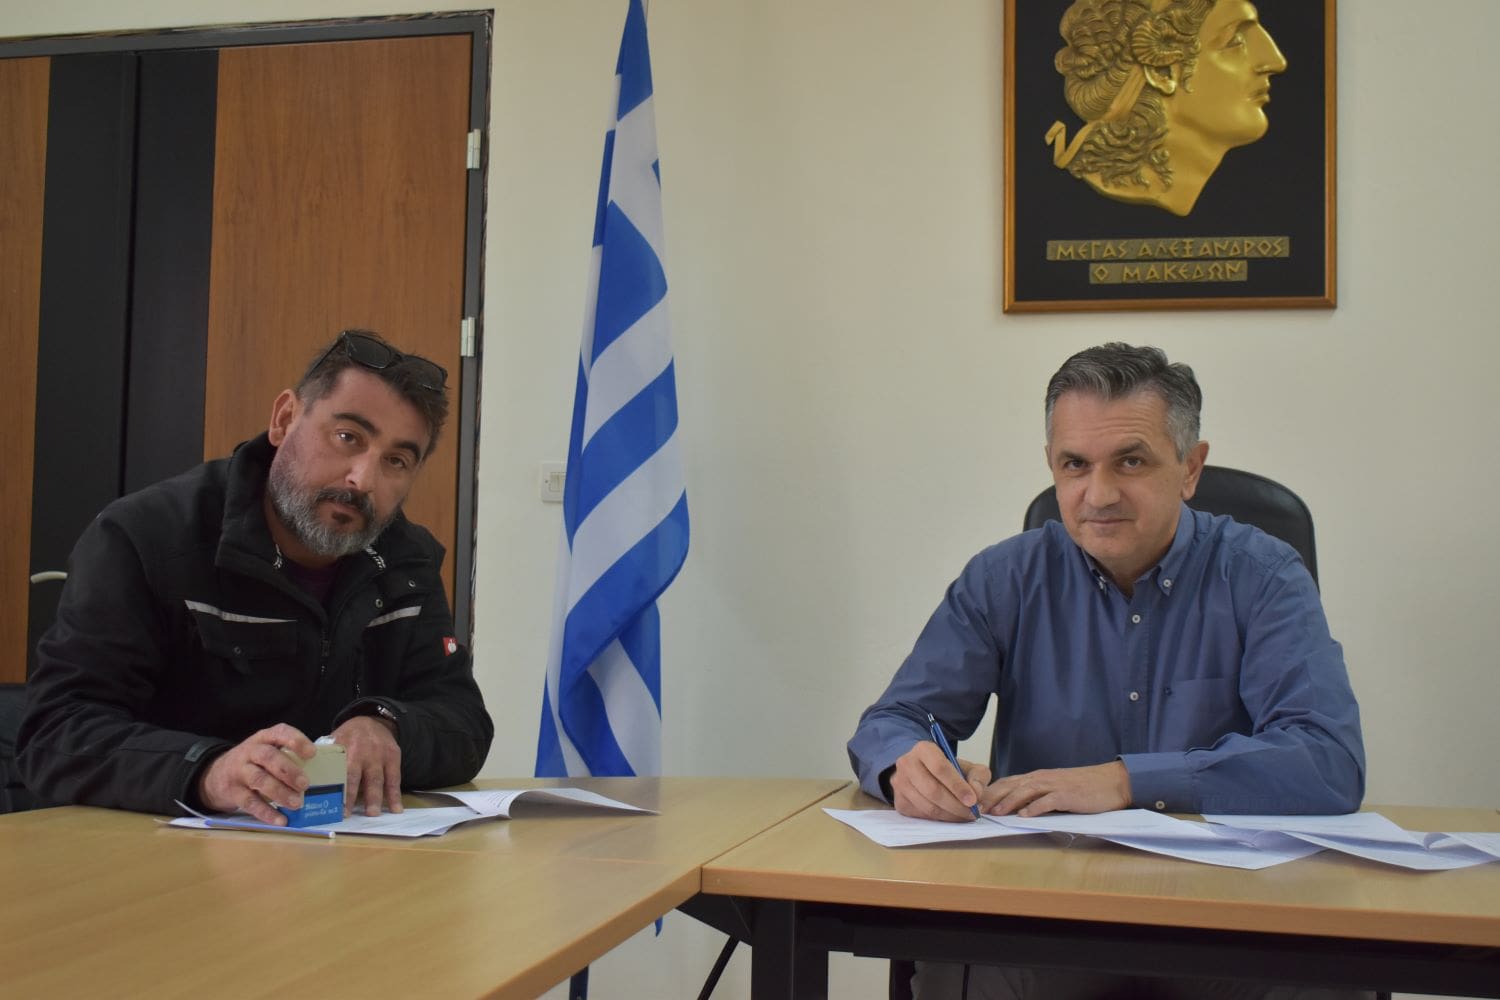 Υπογραφή σύμβασης από τον Περιφερειάρχη Γ. Κασαπίδη για το έργο «Εργασίες ανακατασκευής καταστρώματος Υψηλής Γέφυρας Σερβίων»